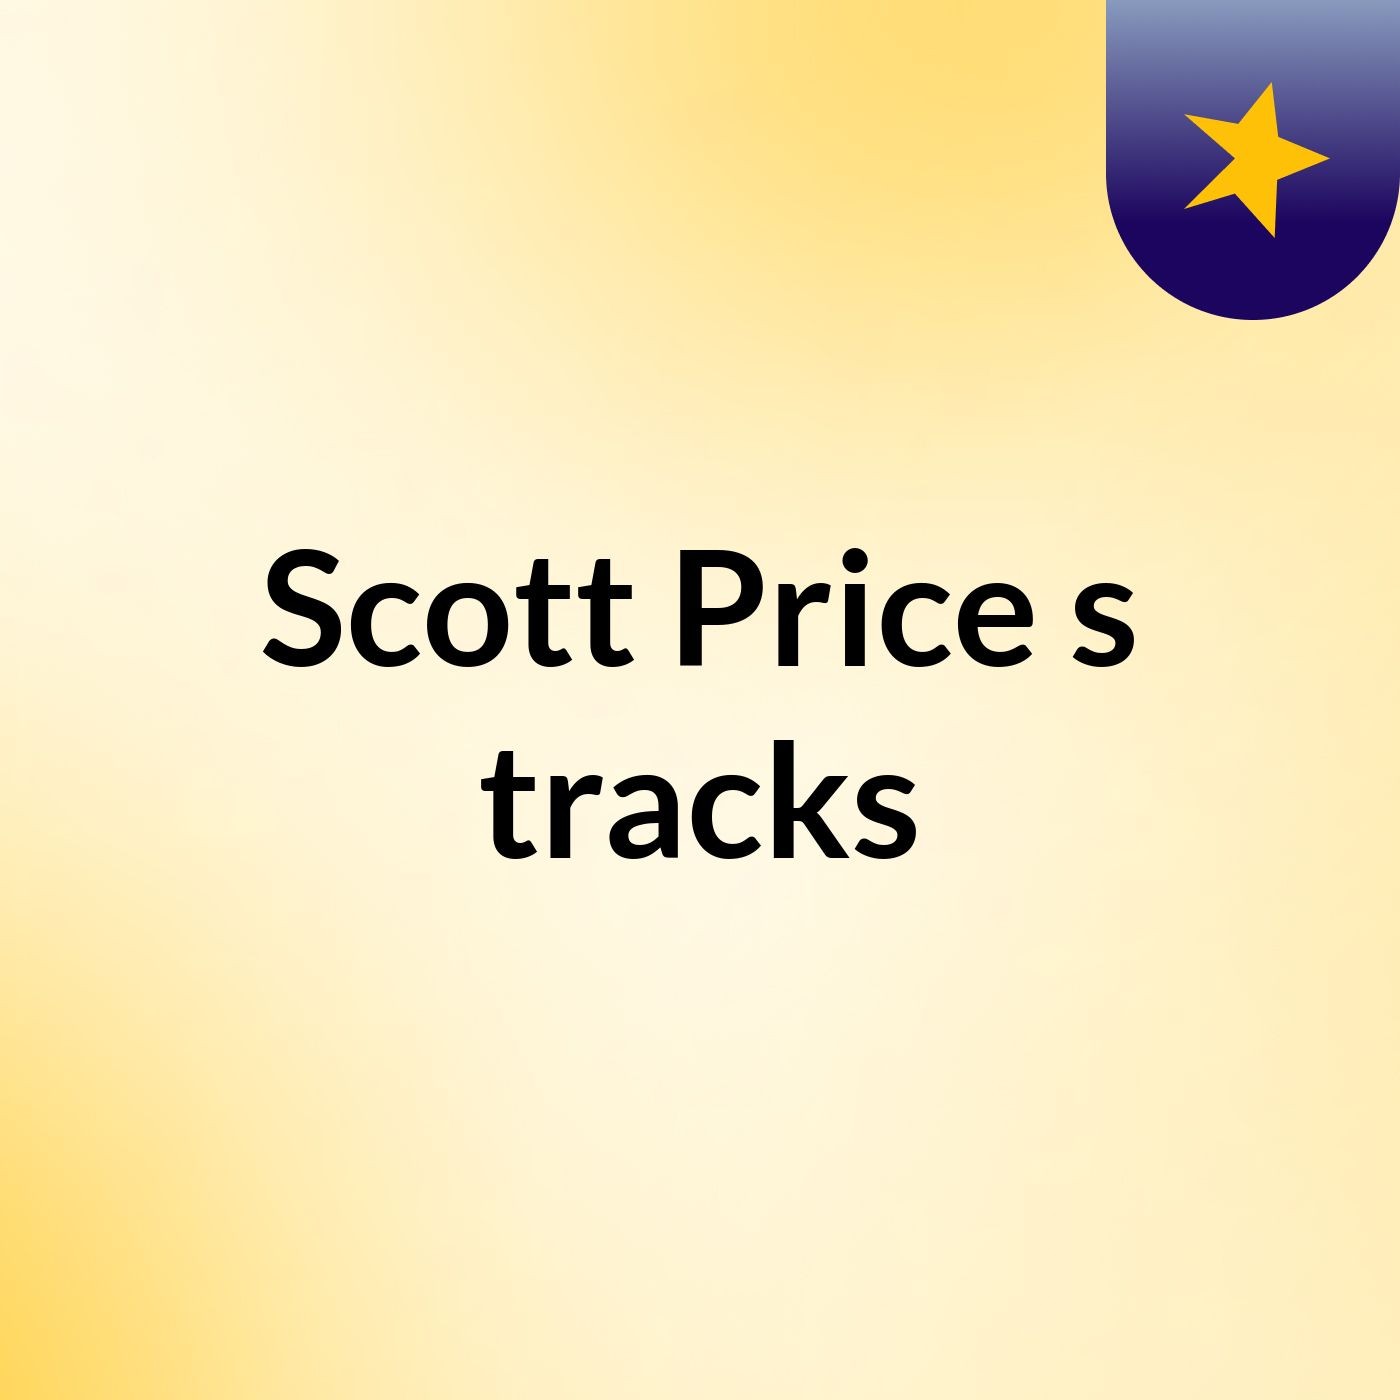 Scott Price's tracks